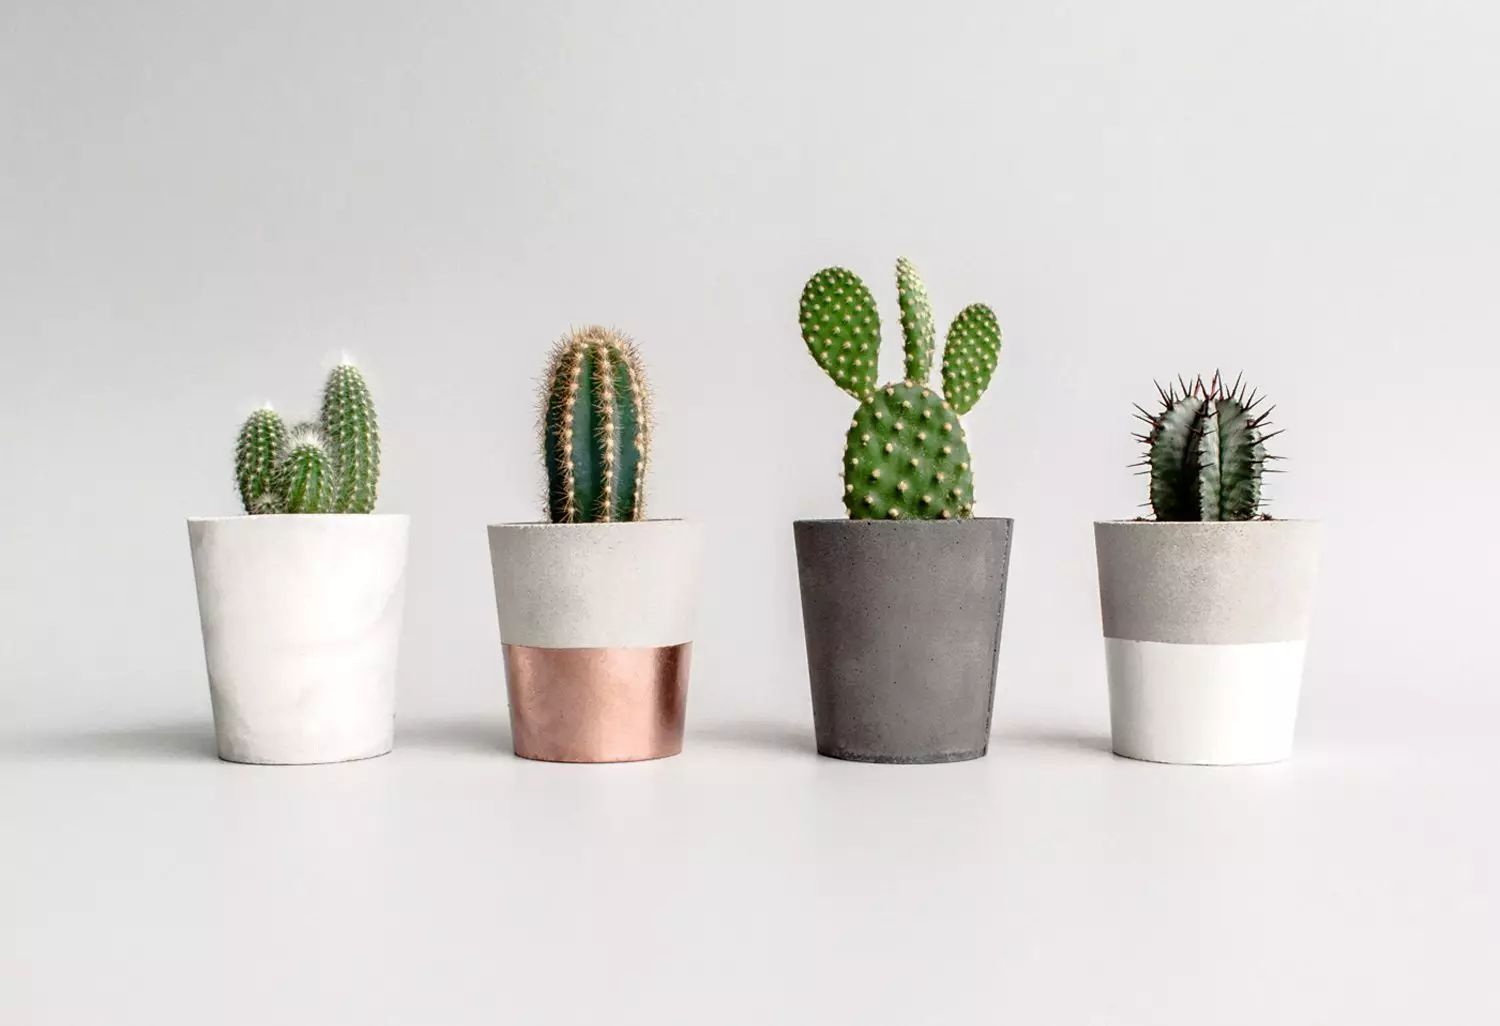 Come usare cactus e succulente in Interior Design 2019?